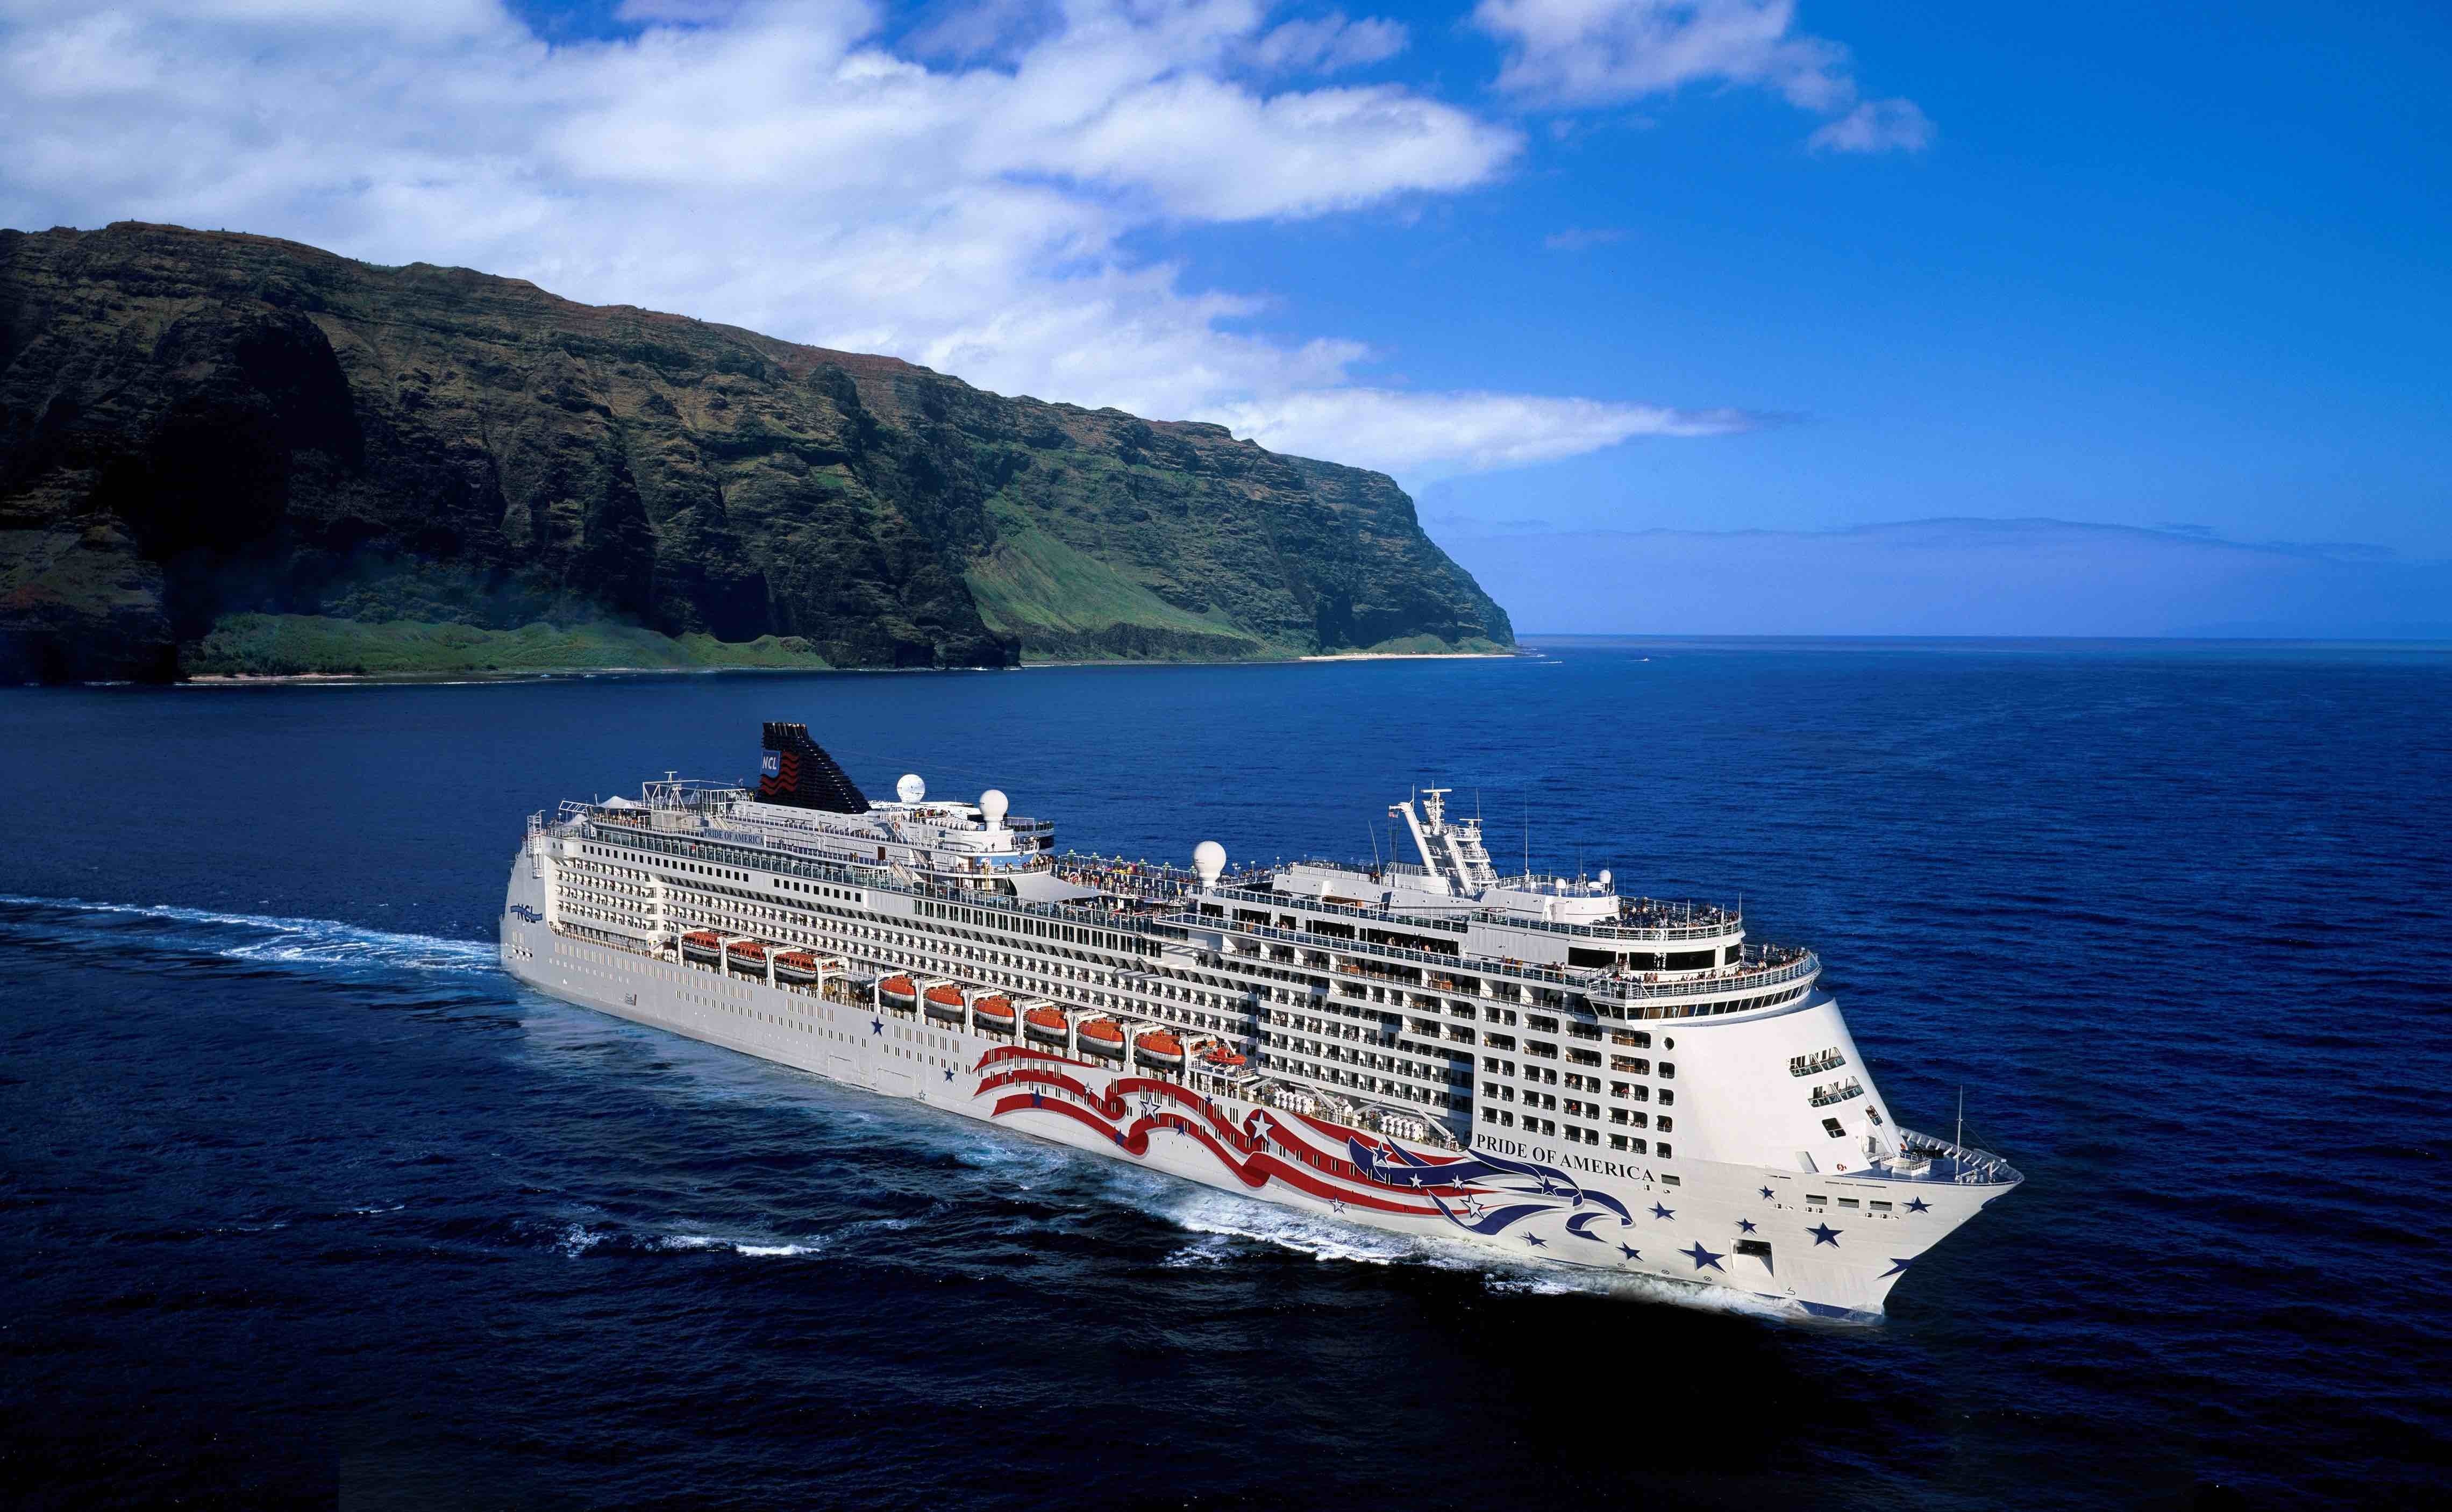 cruise ship hawaii